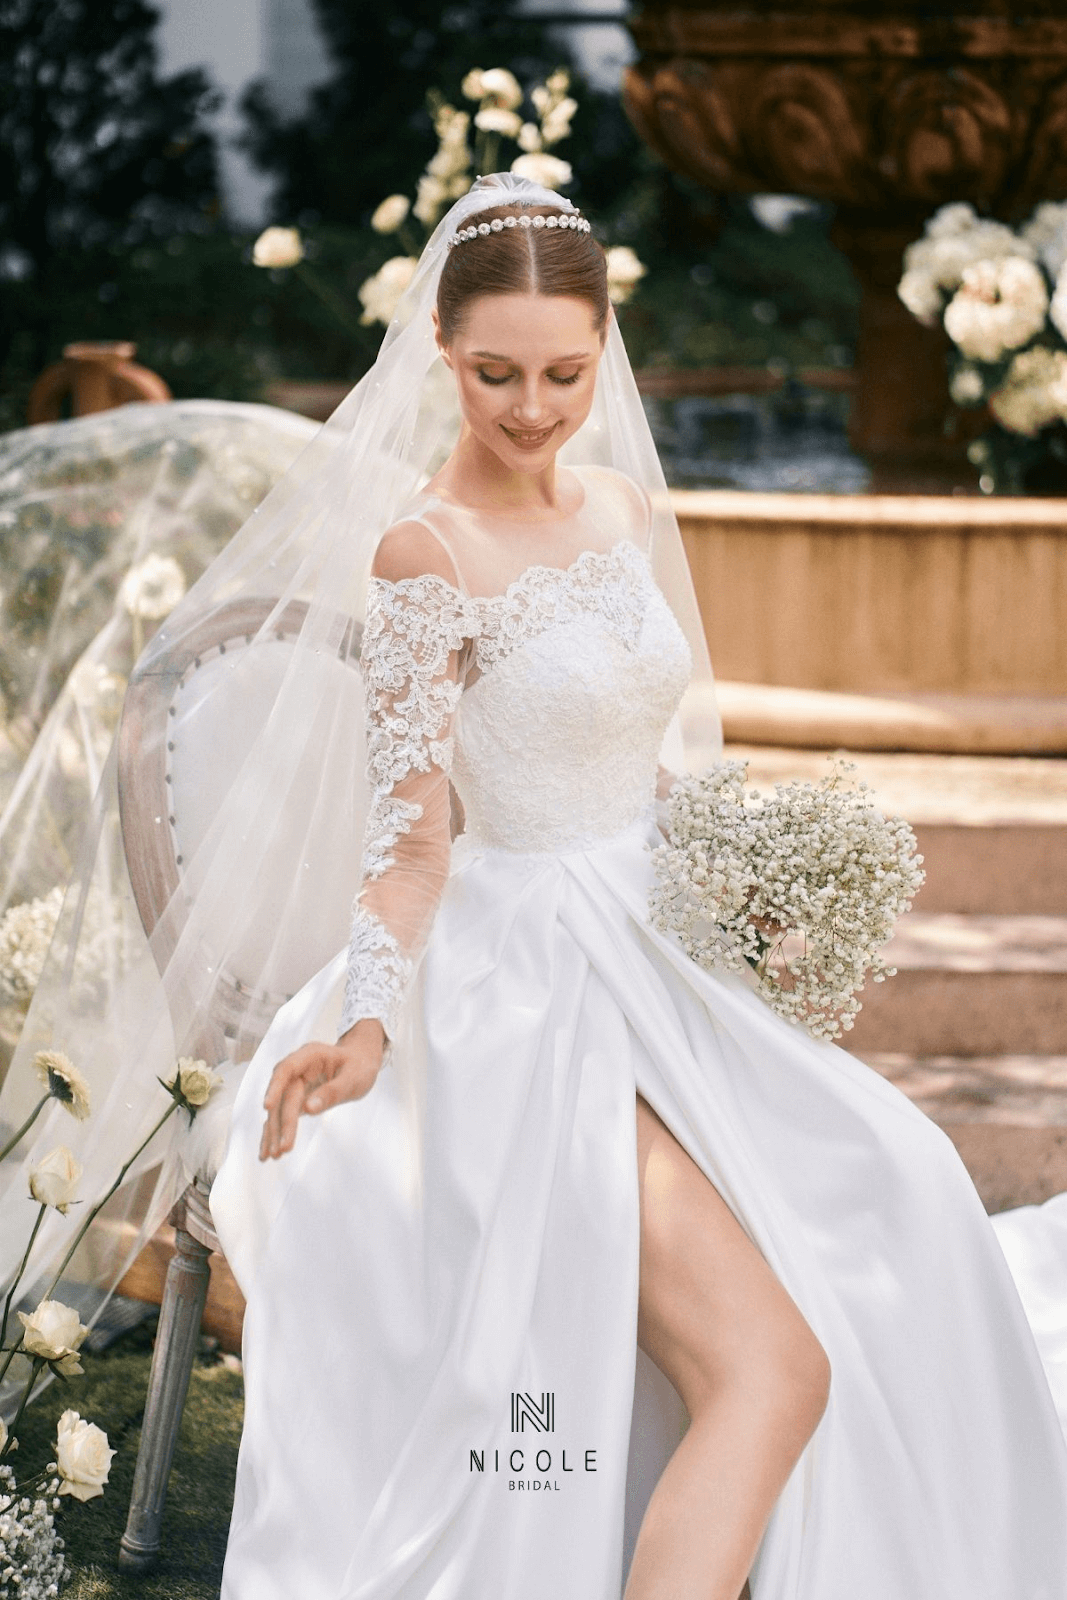 Top 10 mẫu váy cưới phồng tuyệt đẹp và ấn tượng nhất năm 2019